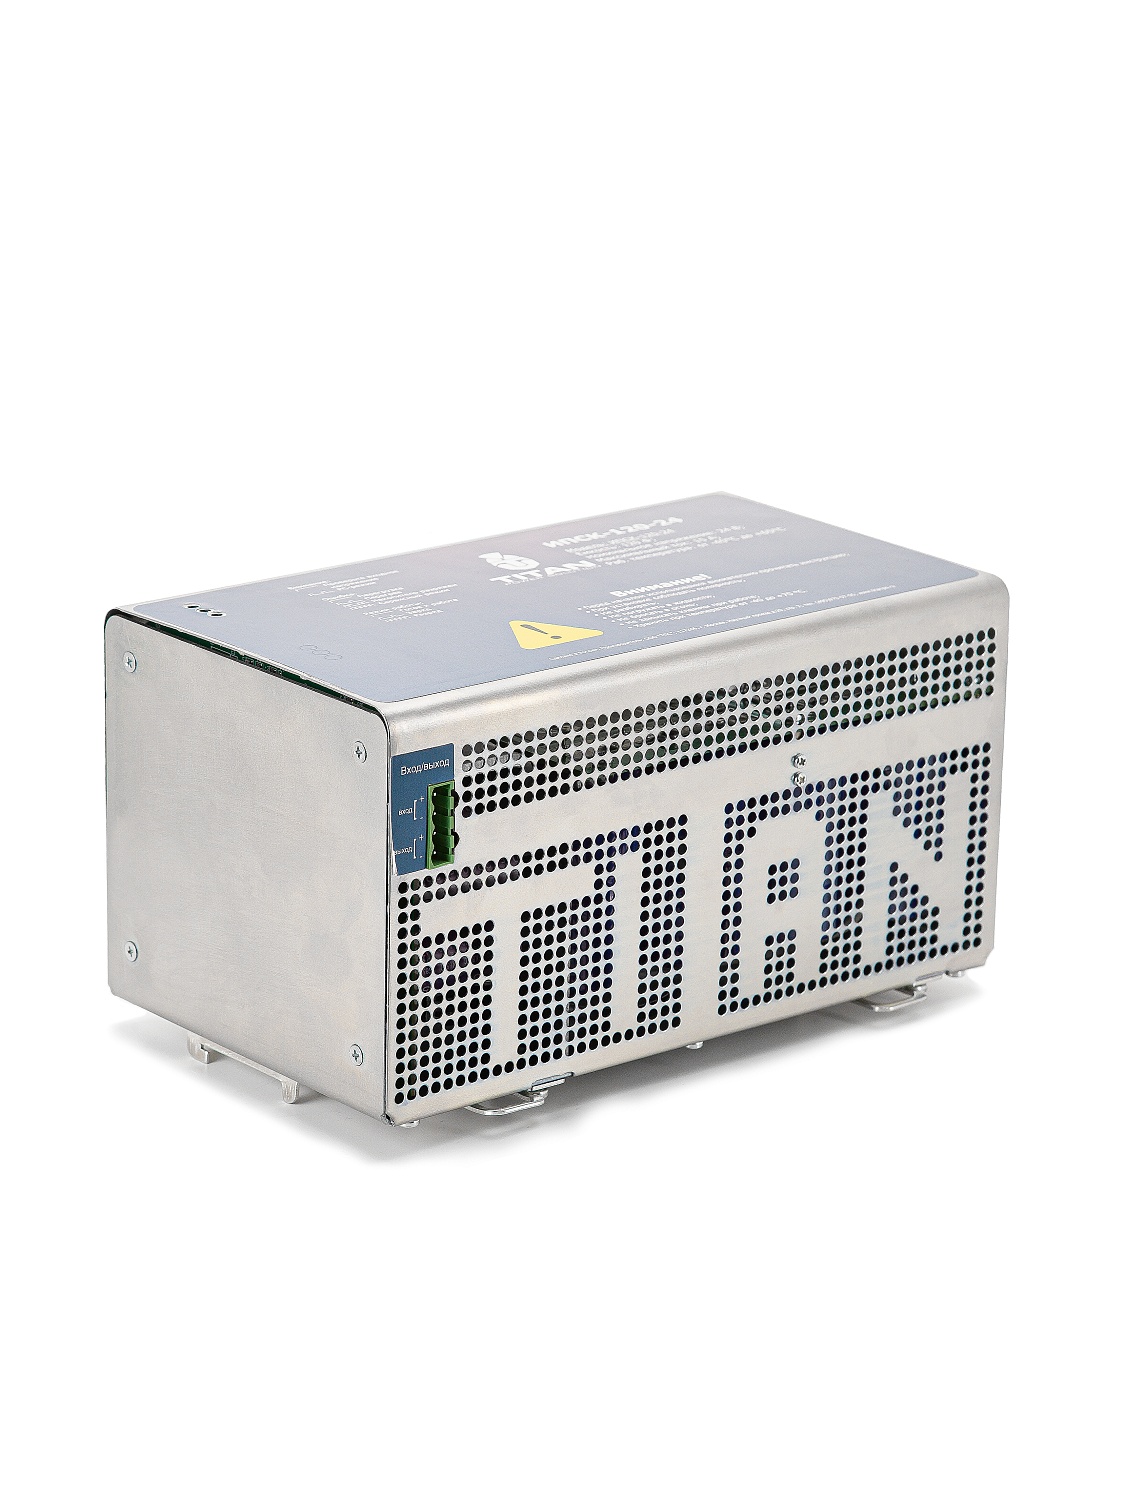 Универсальный суперконденсаторный ИБП  модели ИПСК-120-24 от ООО «ТПС» для применения во всех отраслях